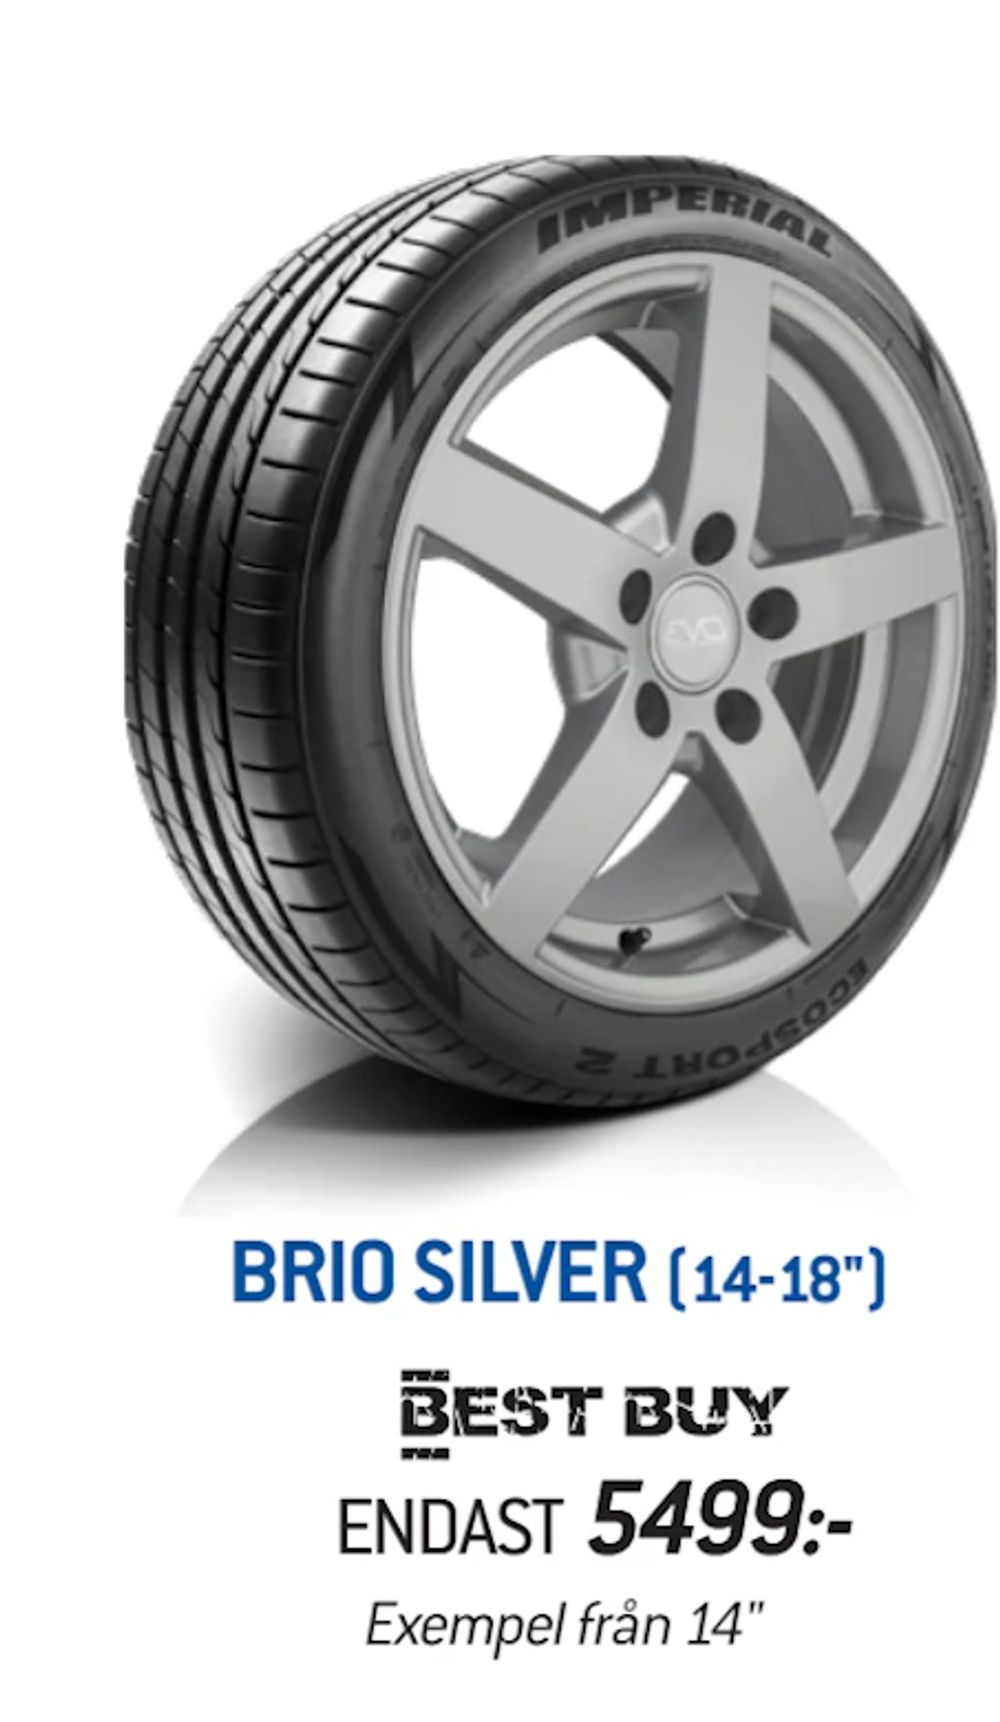 Erbjudanden på BRIO SILVER från thansen för 5 499 kr